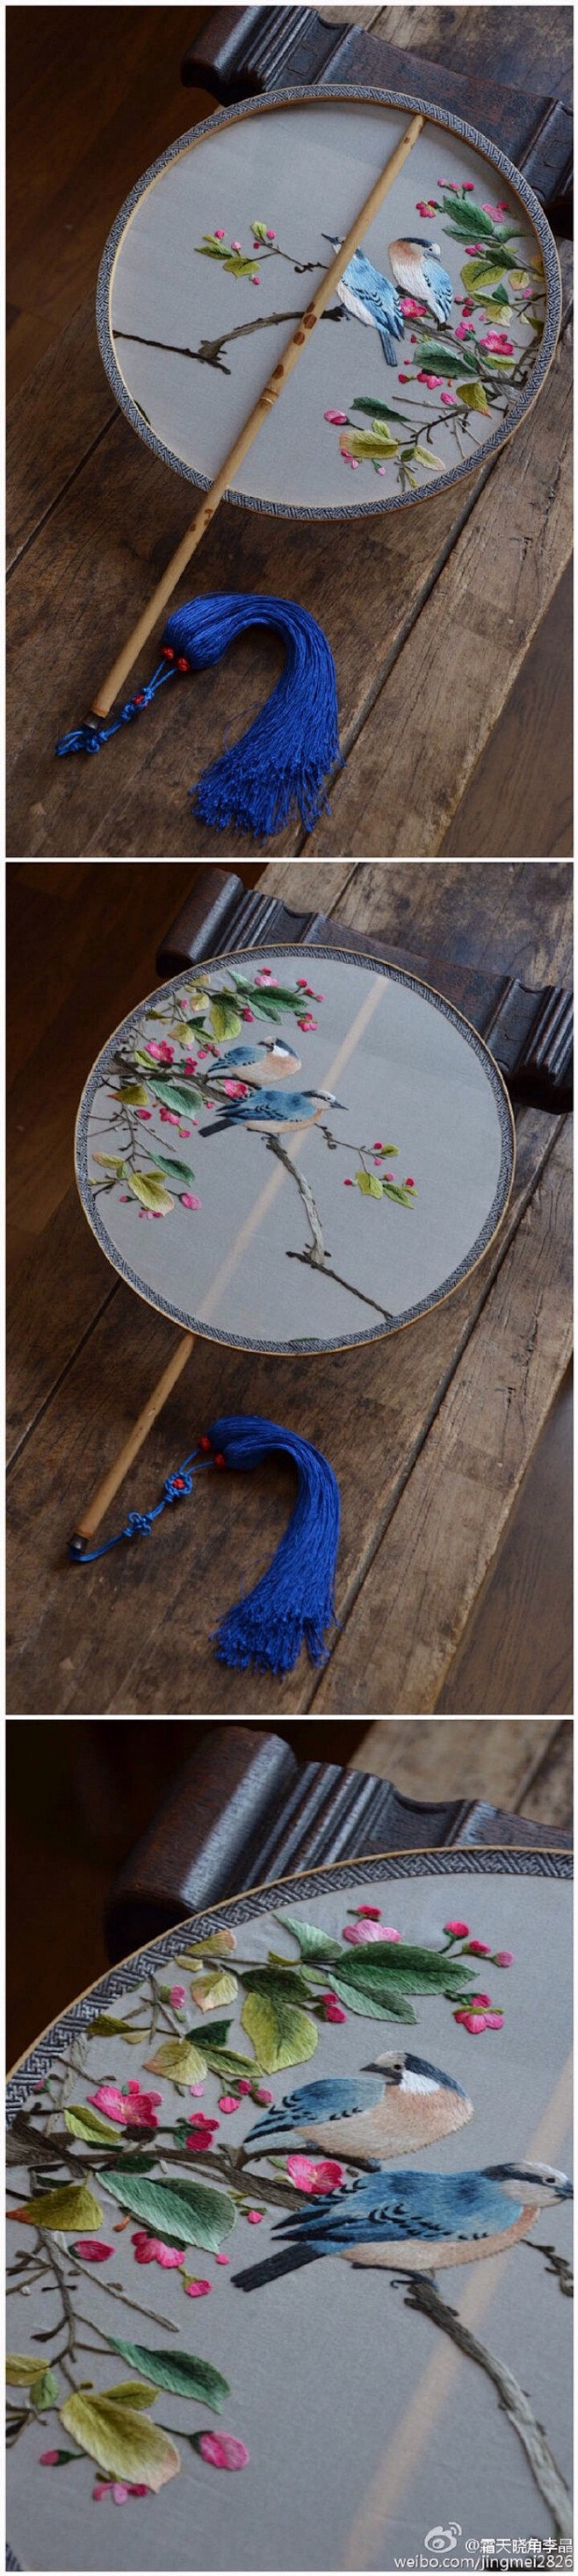 花鸟题材的手绣团扇，湘妃竹柄。